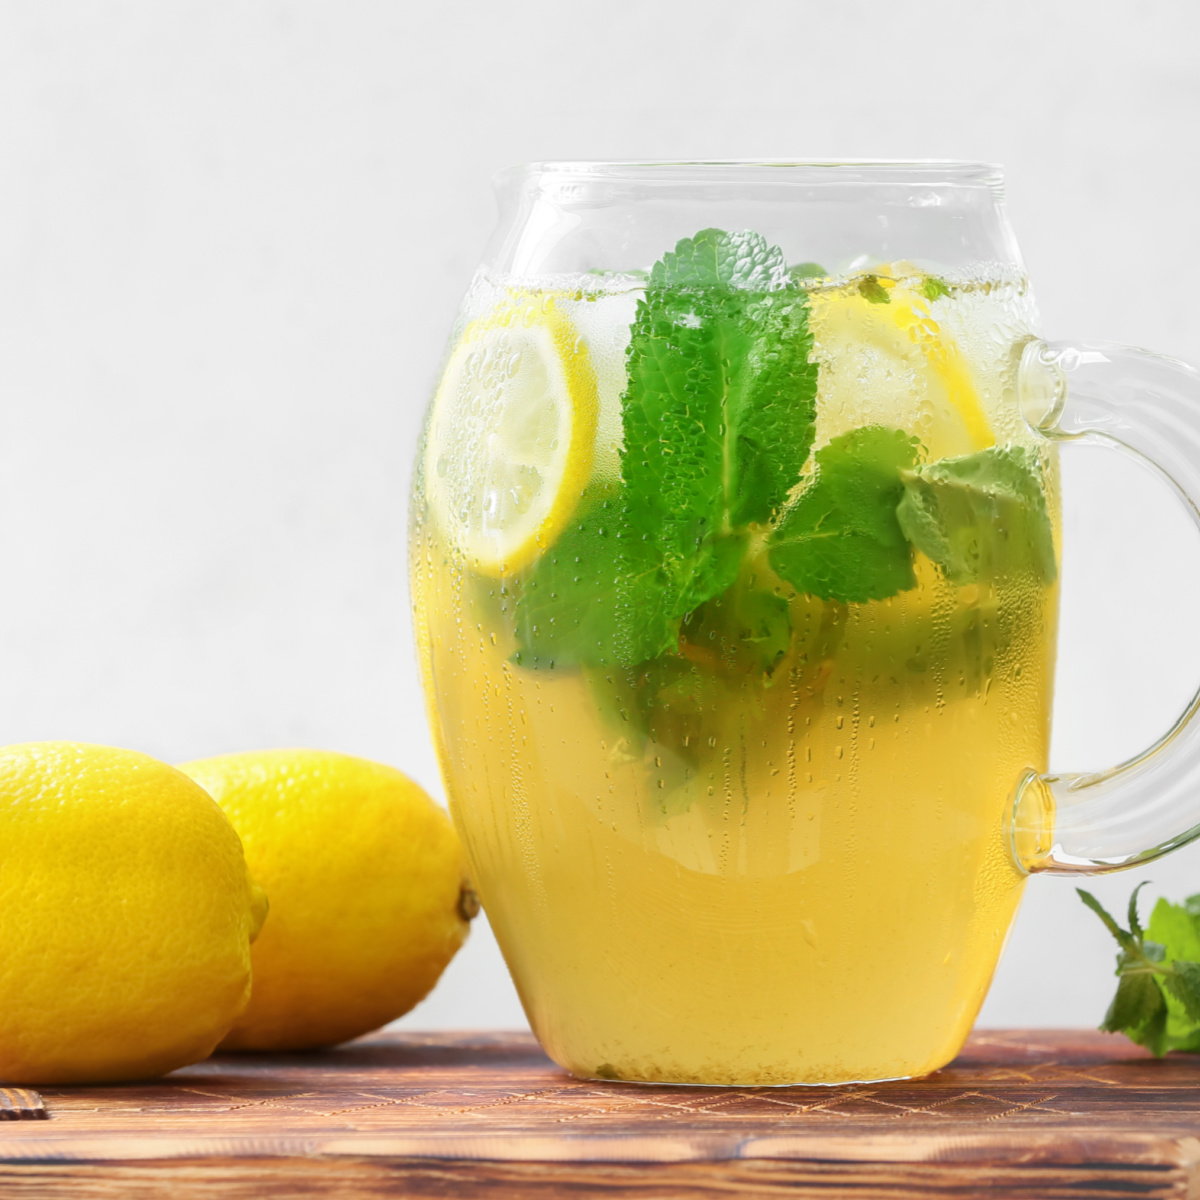 Pitcher of mint tea with lemon